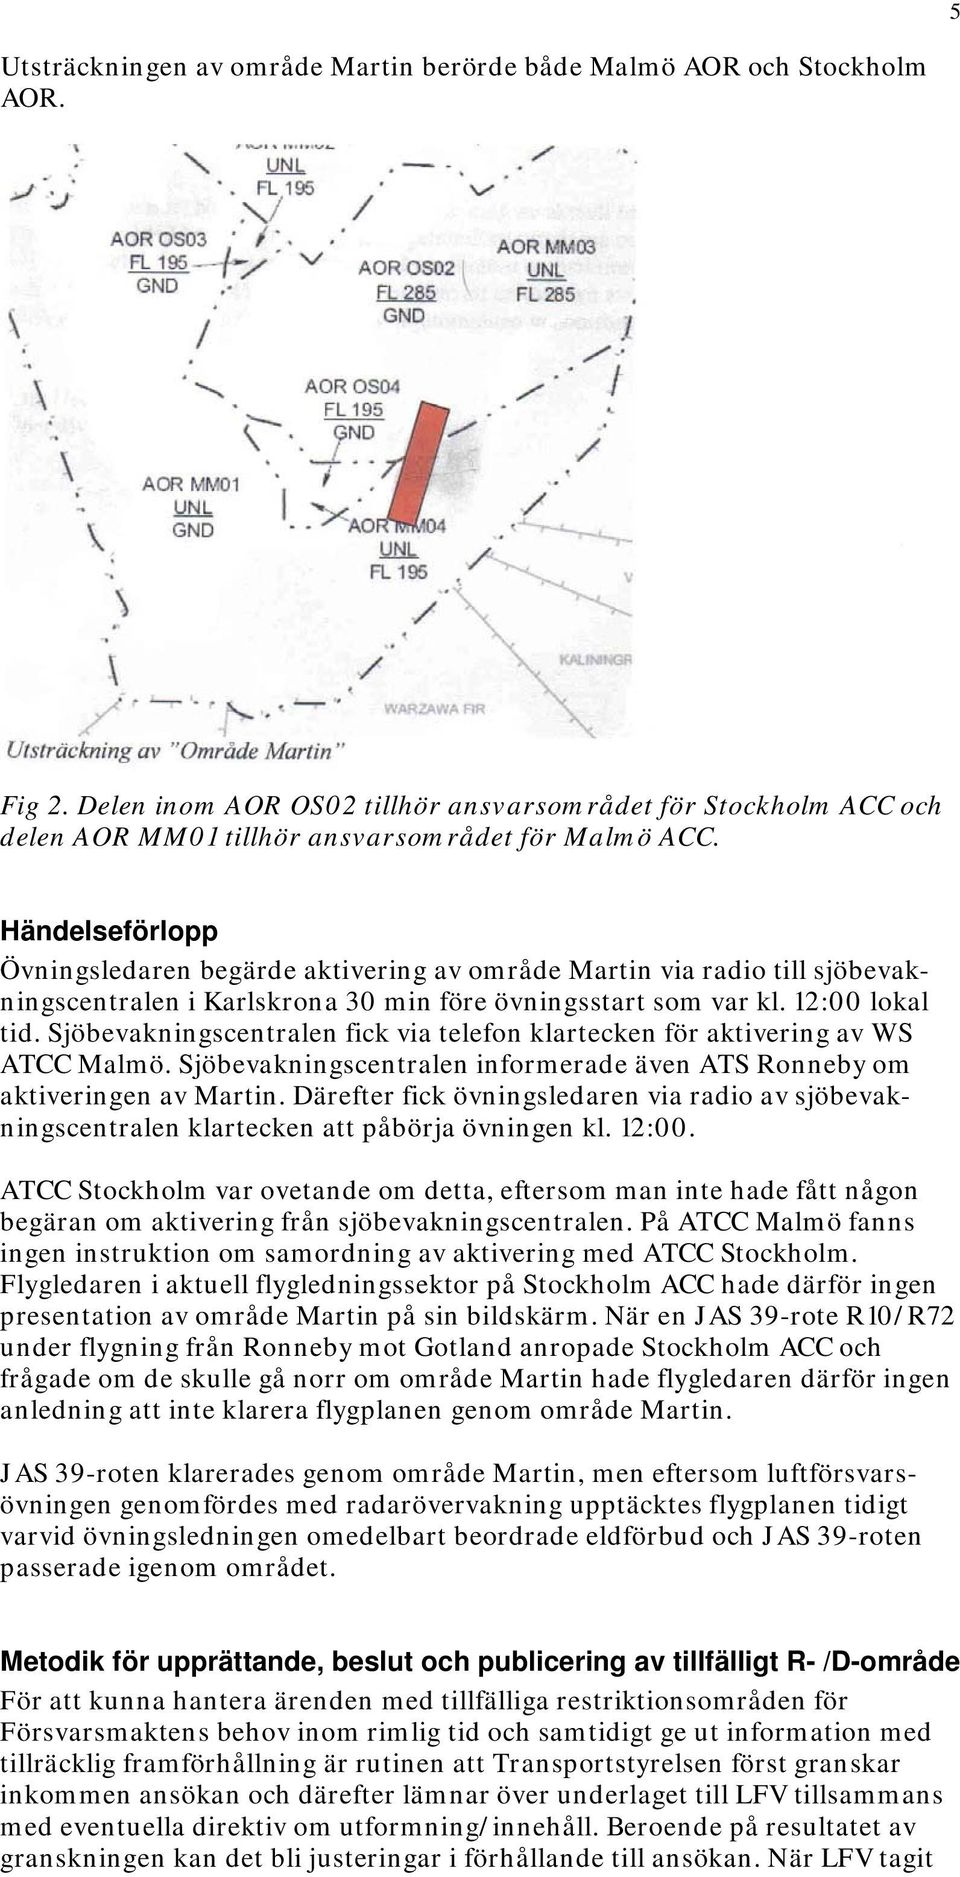 Sjöbevakningscentralen fick via telefon klartecken för aktivering av WS ATCC Malmö. Sjöbevakningscentralen informerade även ATS Ronneby om aktiveringen av Martin.